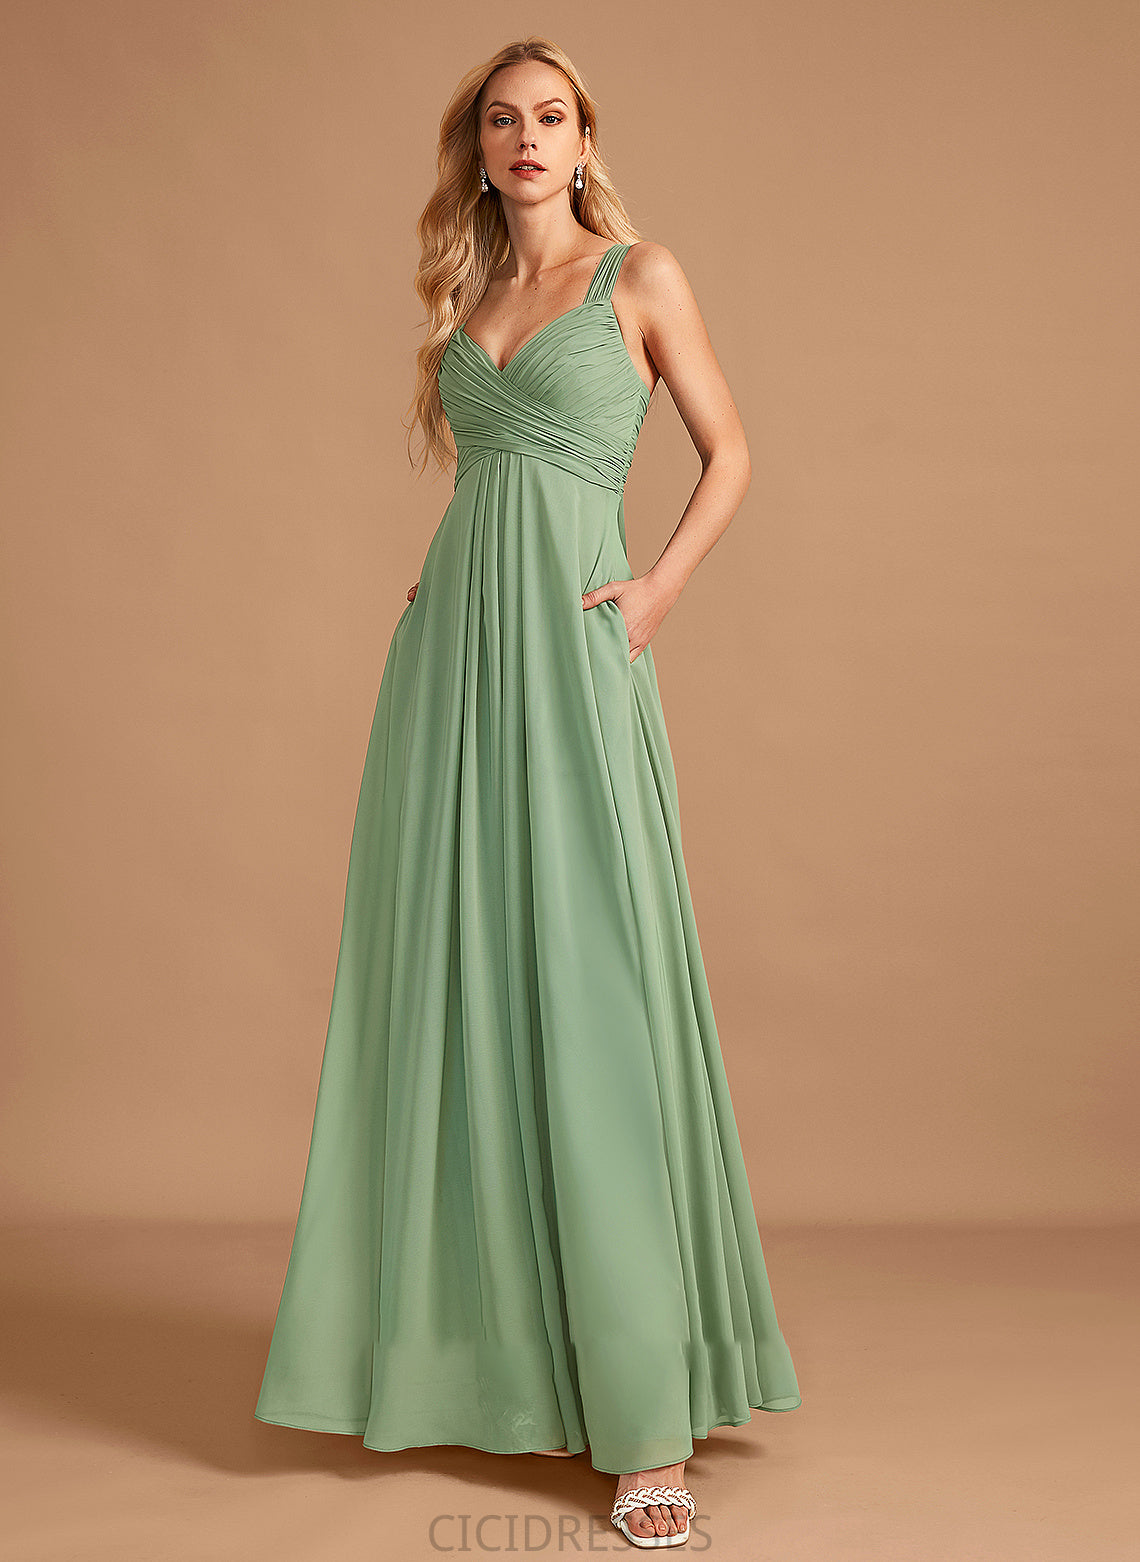 Neckline Fabric Embellishment A-Line Floor-Length Ruffle Silhouette V-neck Length Meadow Knee Length Sleeveless Bridesmaid Dresses